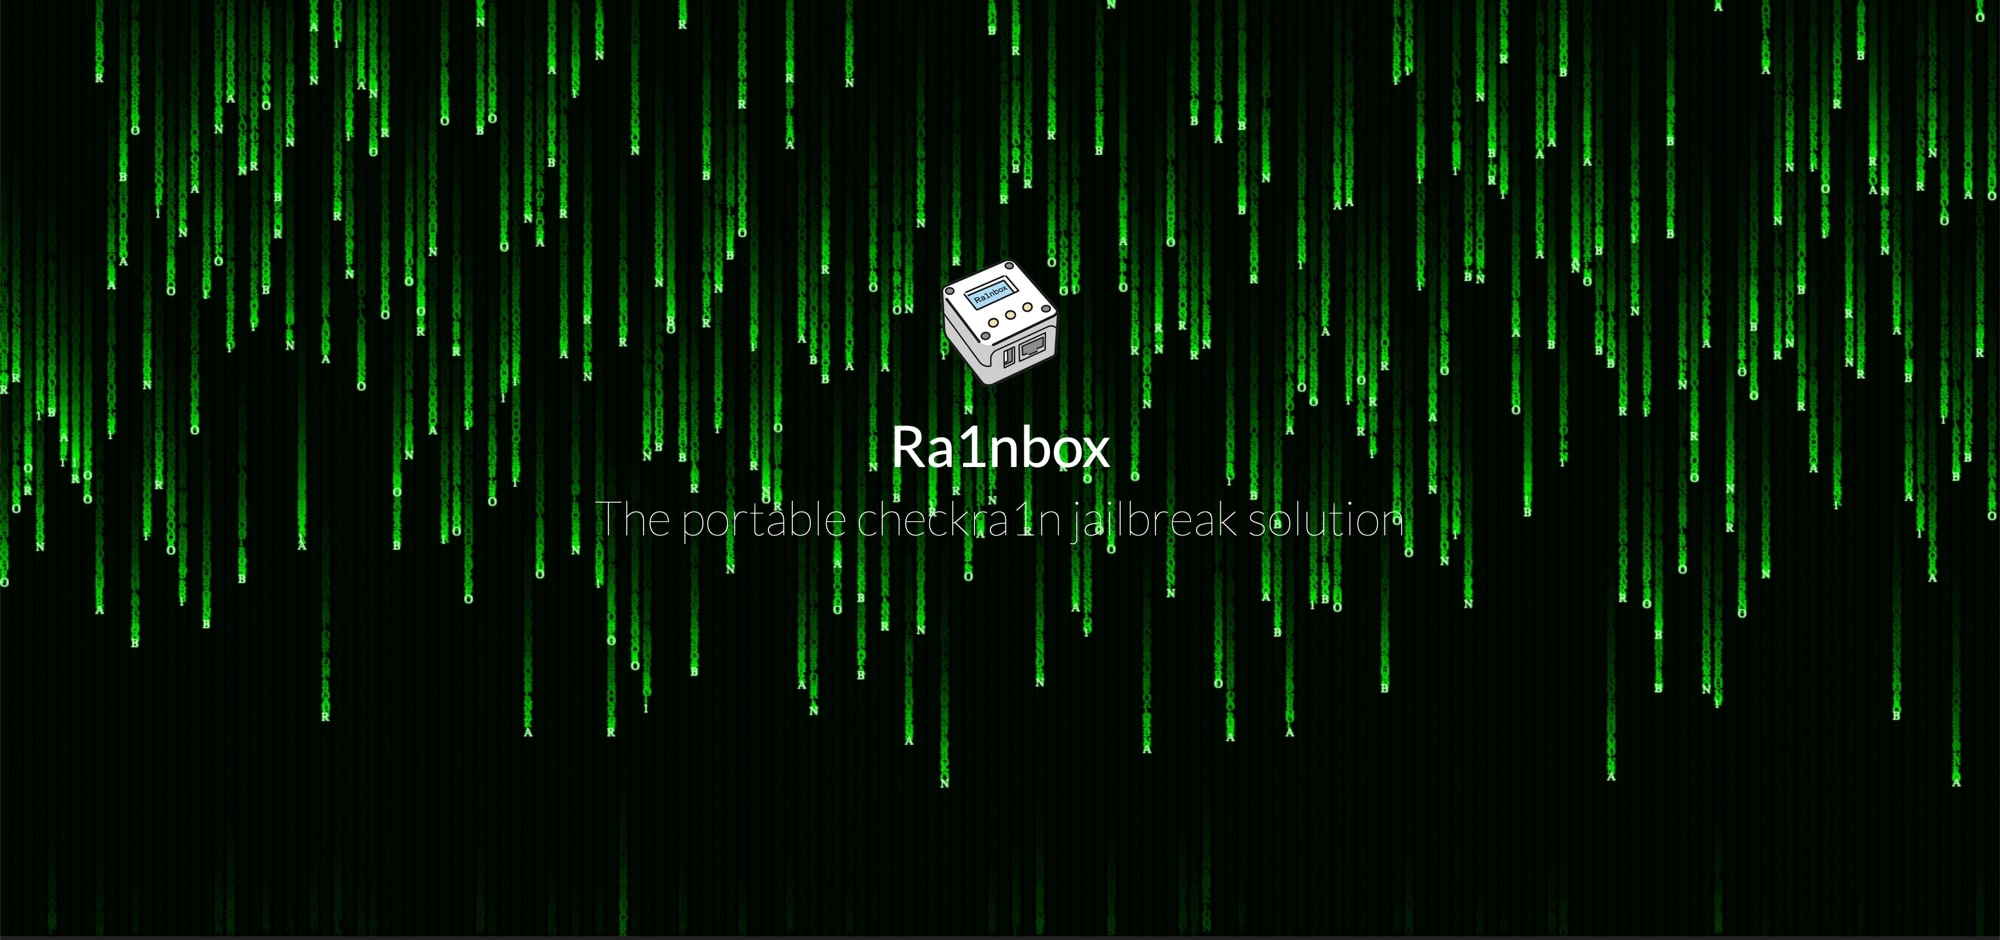 Ra1nbox adalah kotak bertenaga NanoPi Neo2 yang dapat mendistribusikan checkra1n tanpa komputer